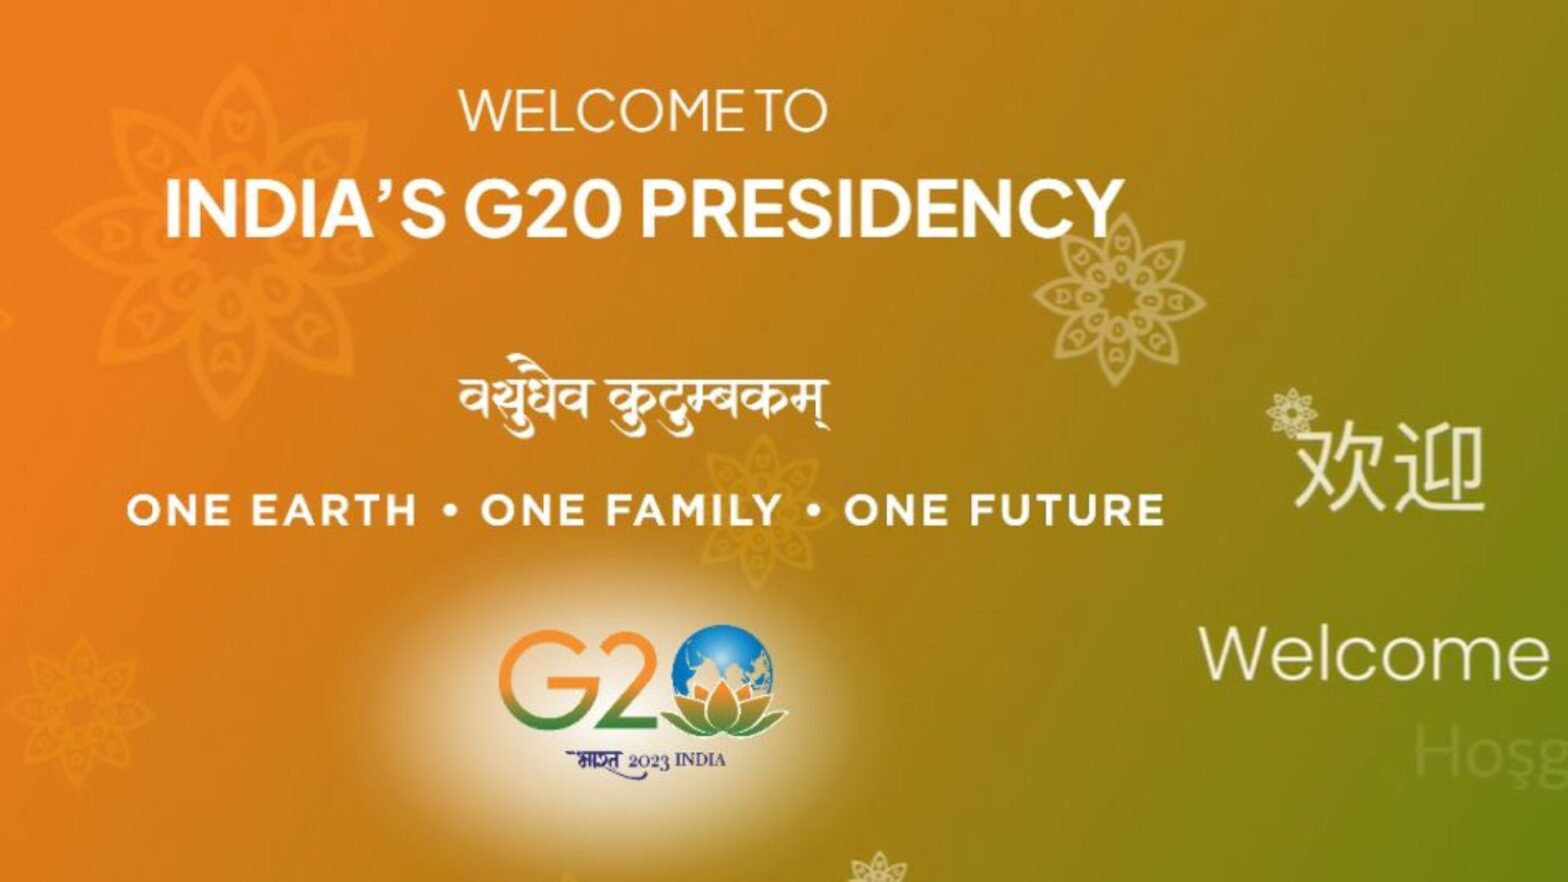 G20 Summit Agra